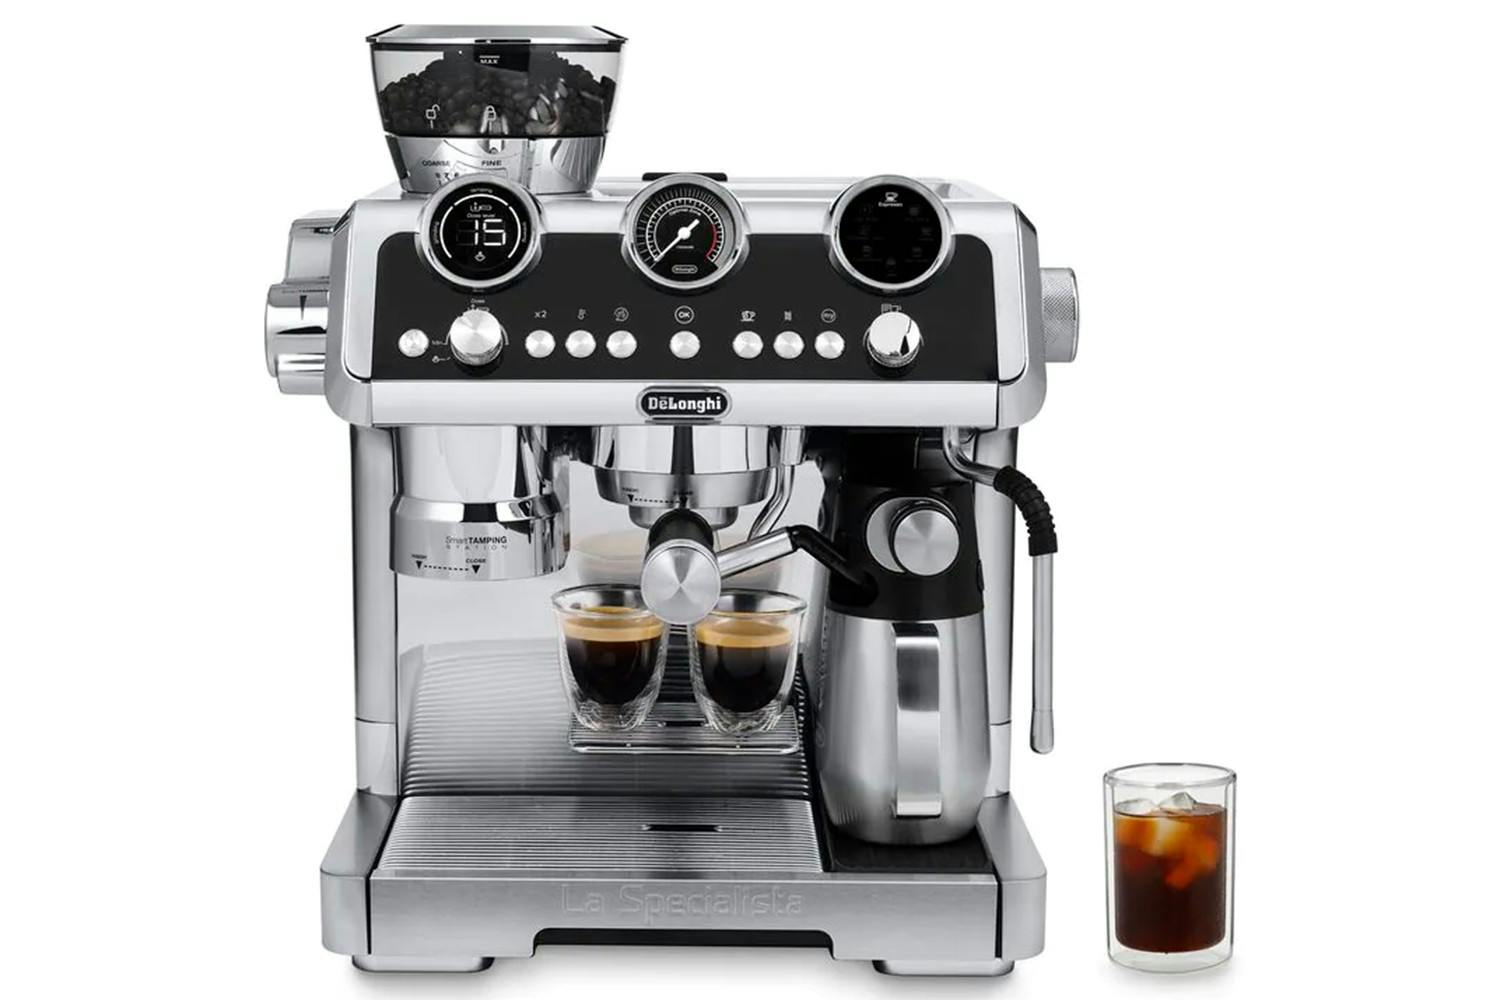 DeLonghi La Specialista Maestro Coffee Machine | EC9865.M | Silver